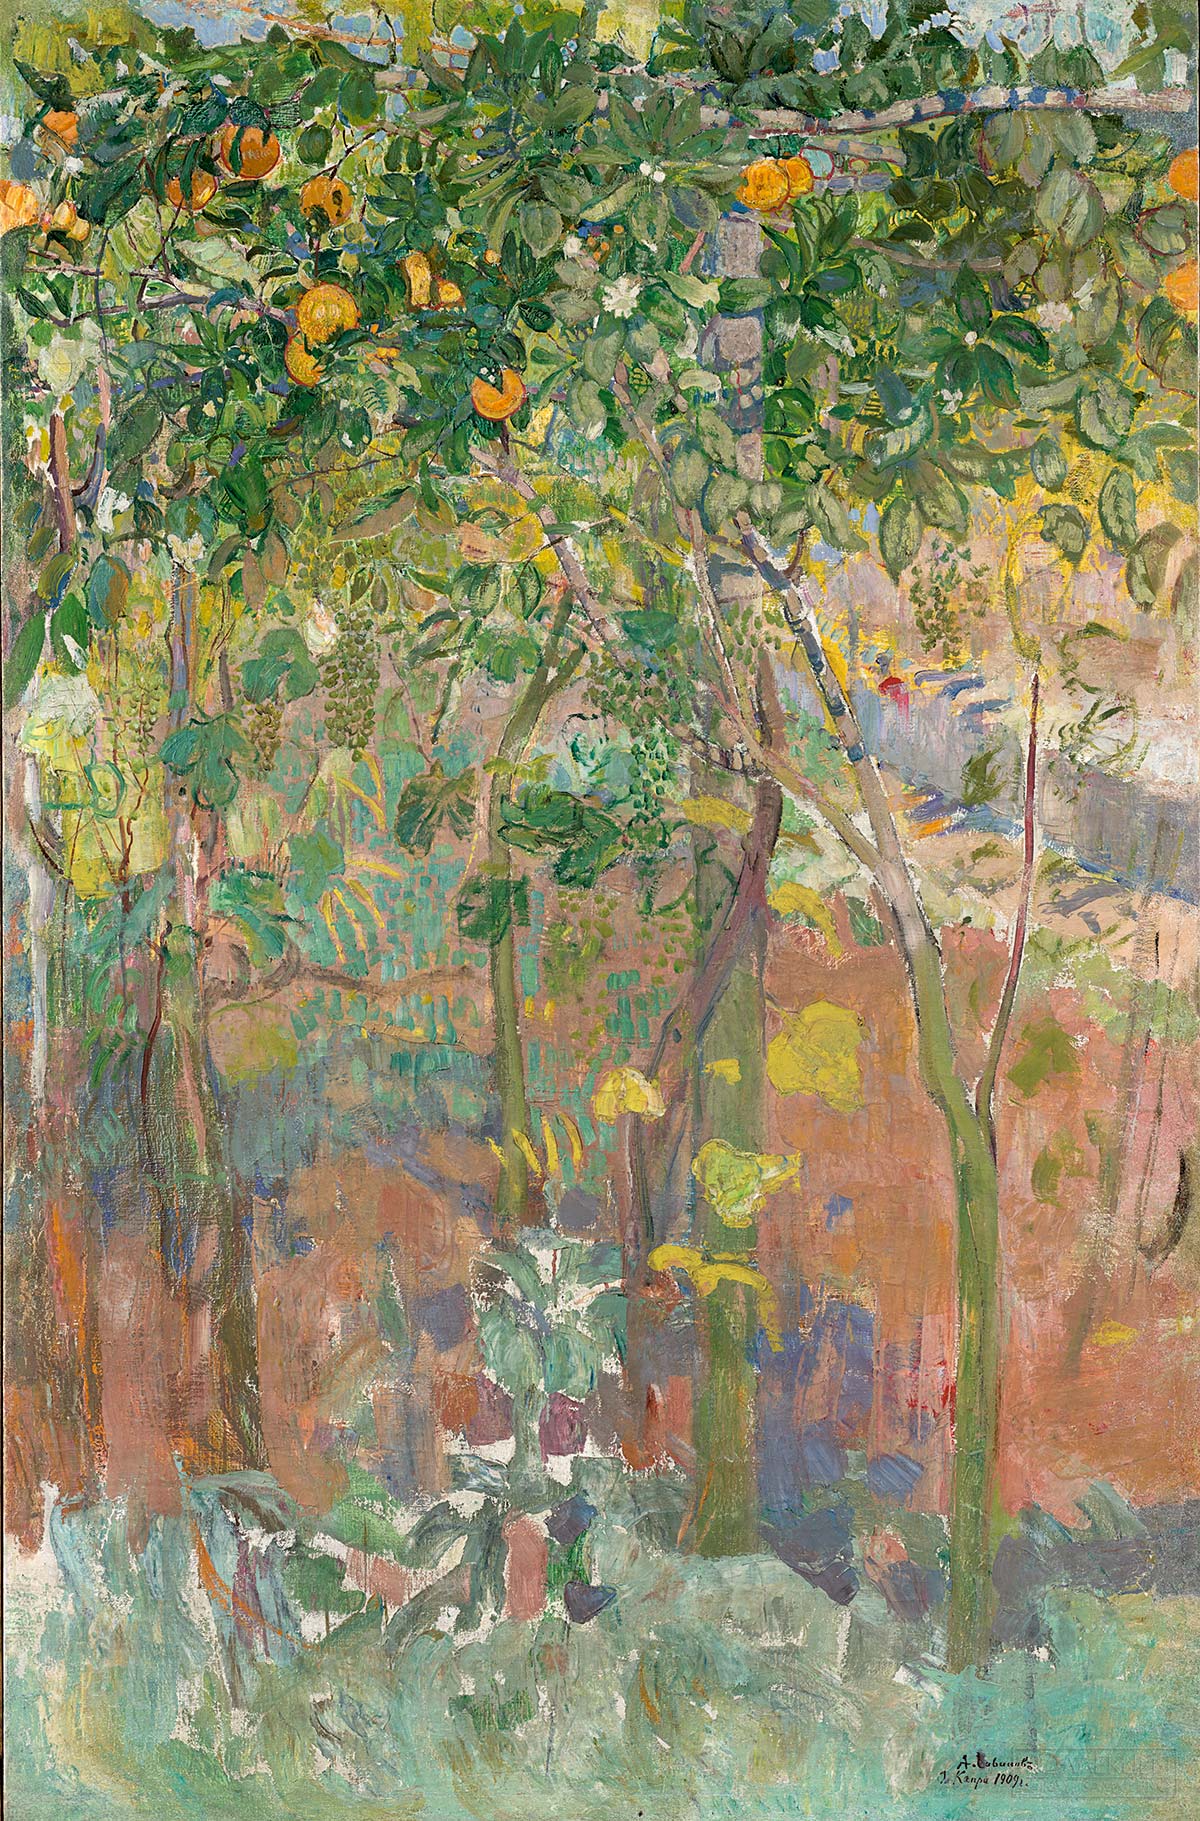 Савинов А. Апельсиновые деревья. 1909. Государственная Третьяковская галерея